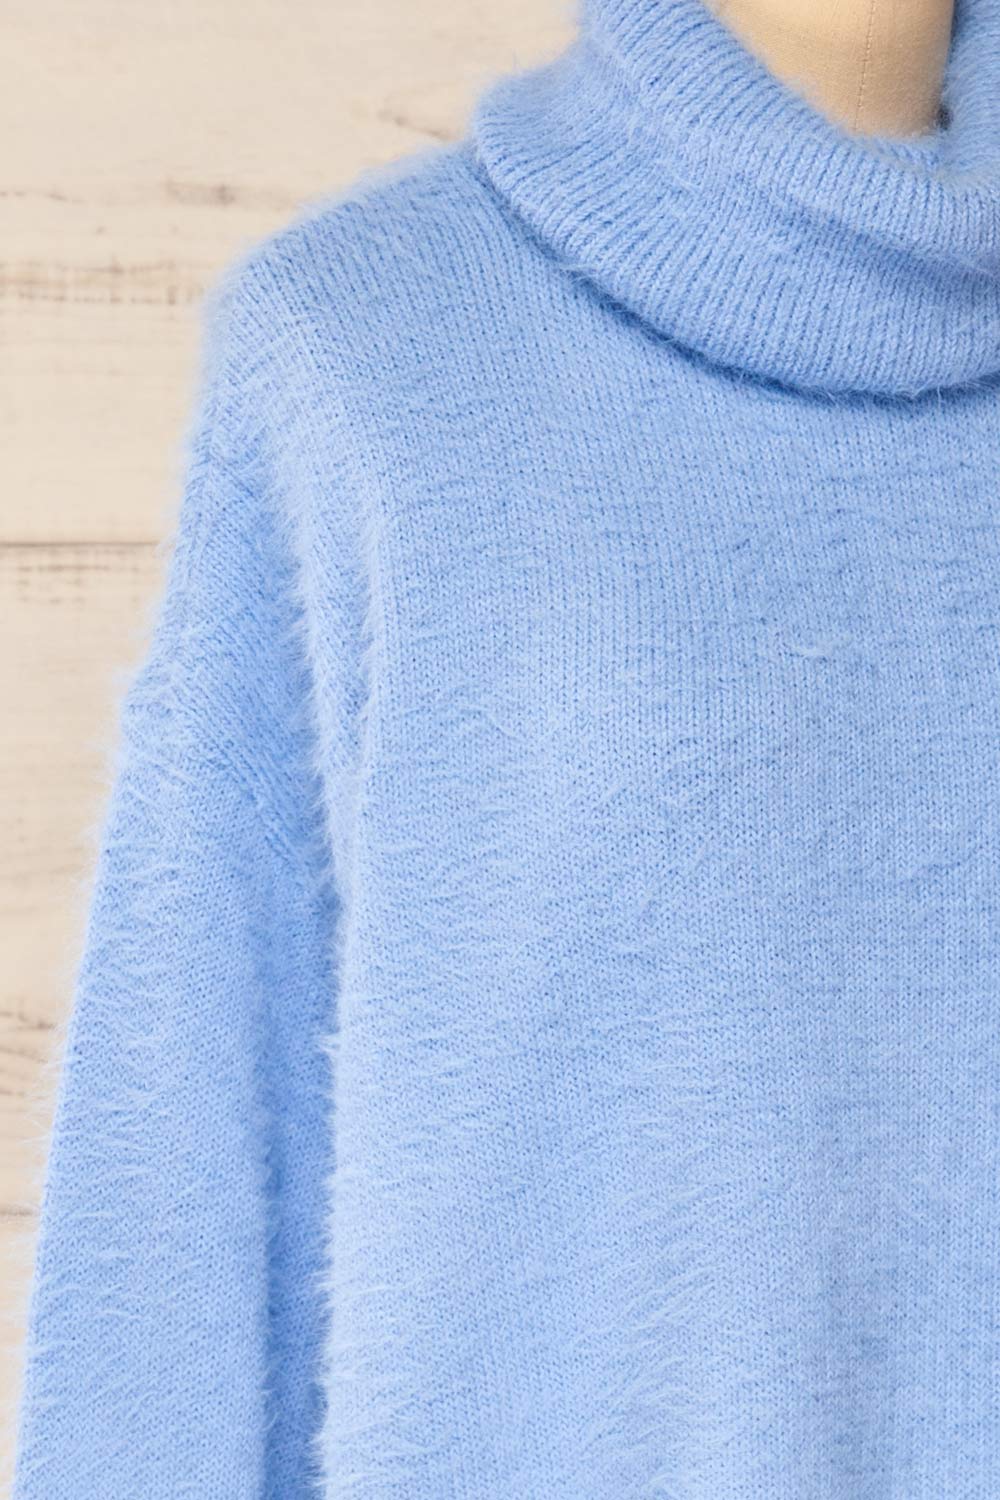 Titania Fuzzy Turtleneck Sweater | La petite garçonne side close-up